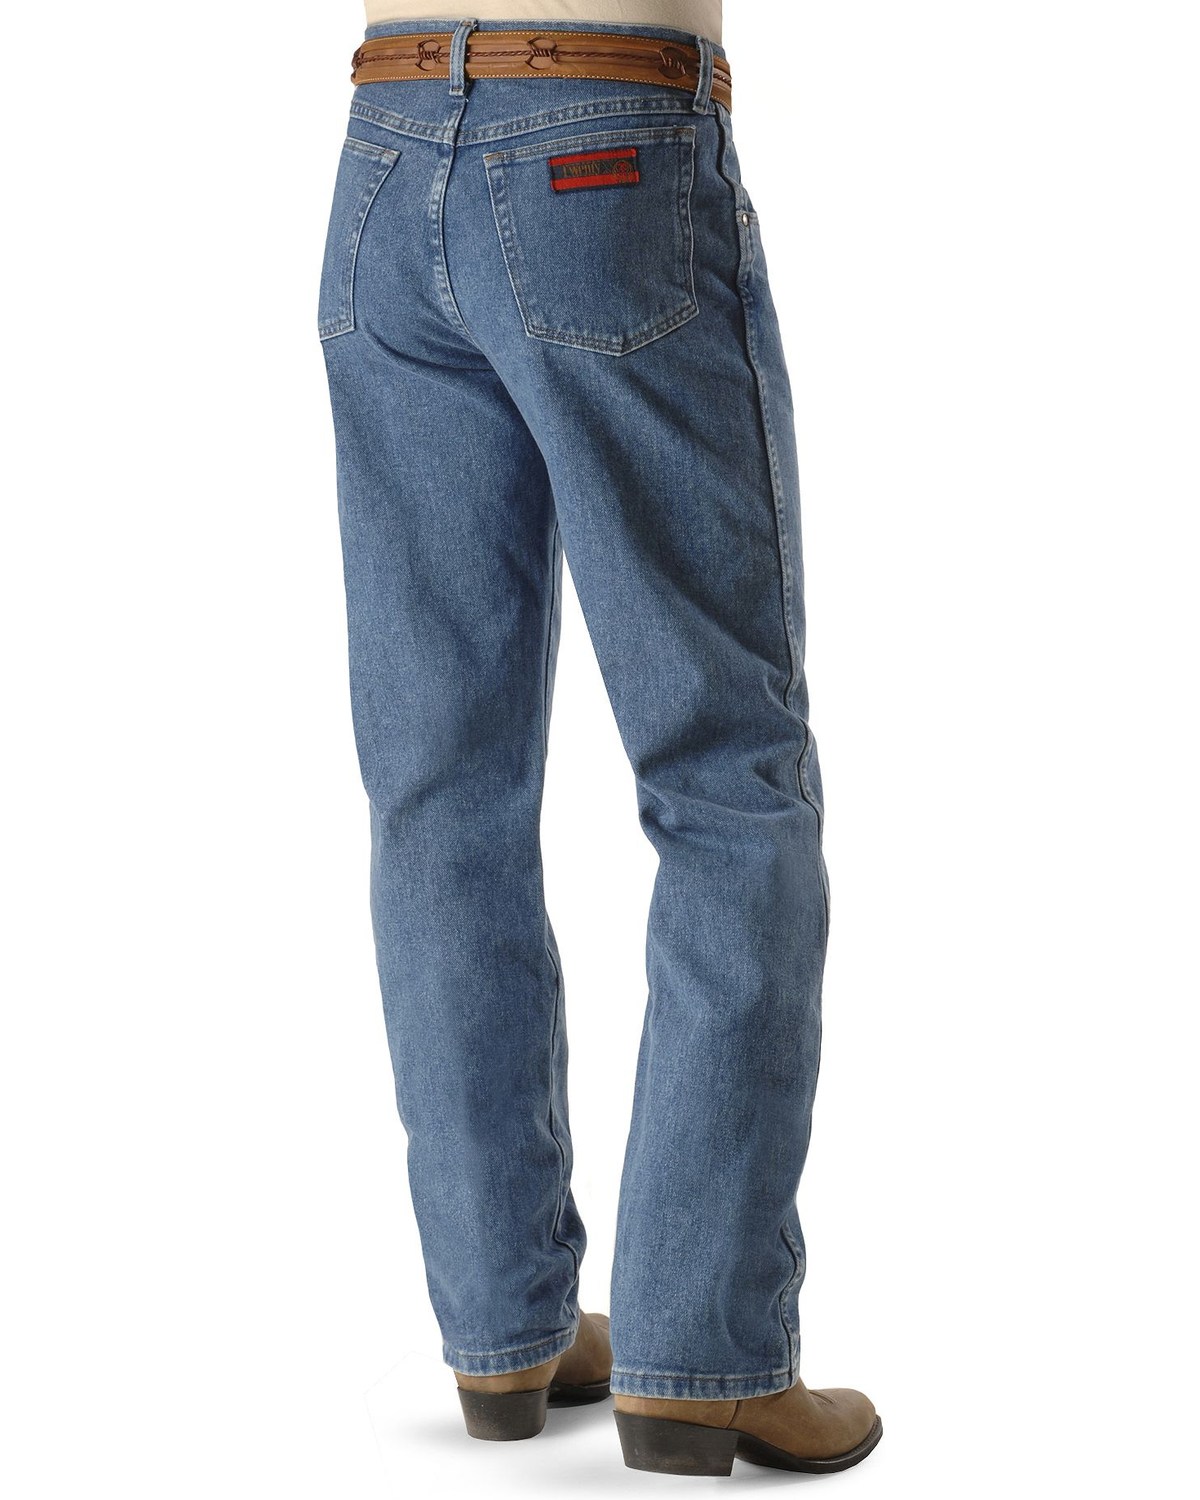 Wrangler 20X No. 22 Original Jeans 